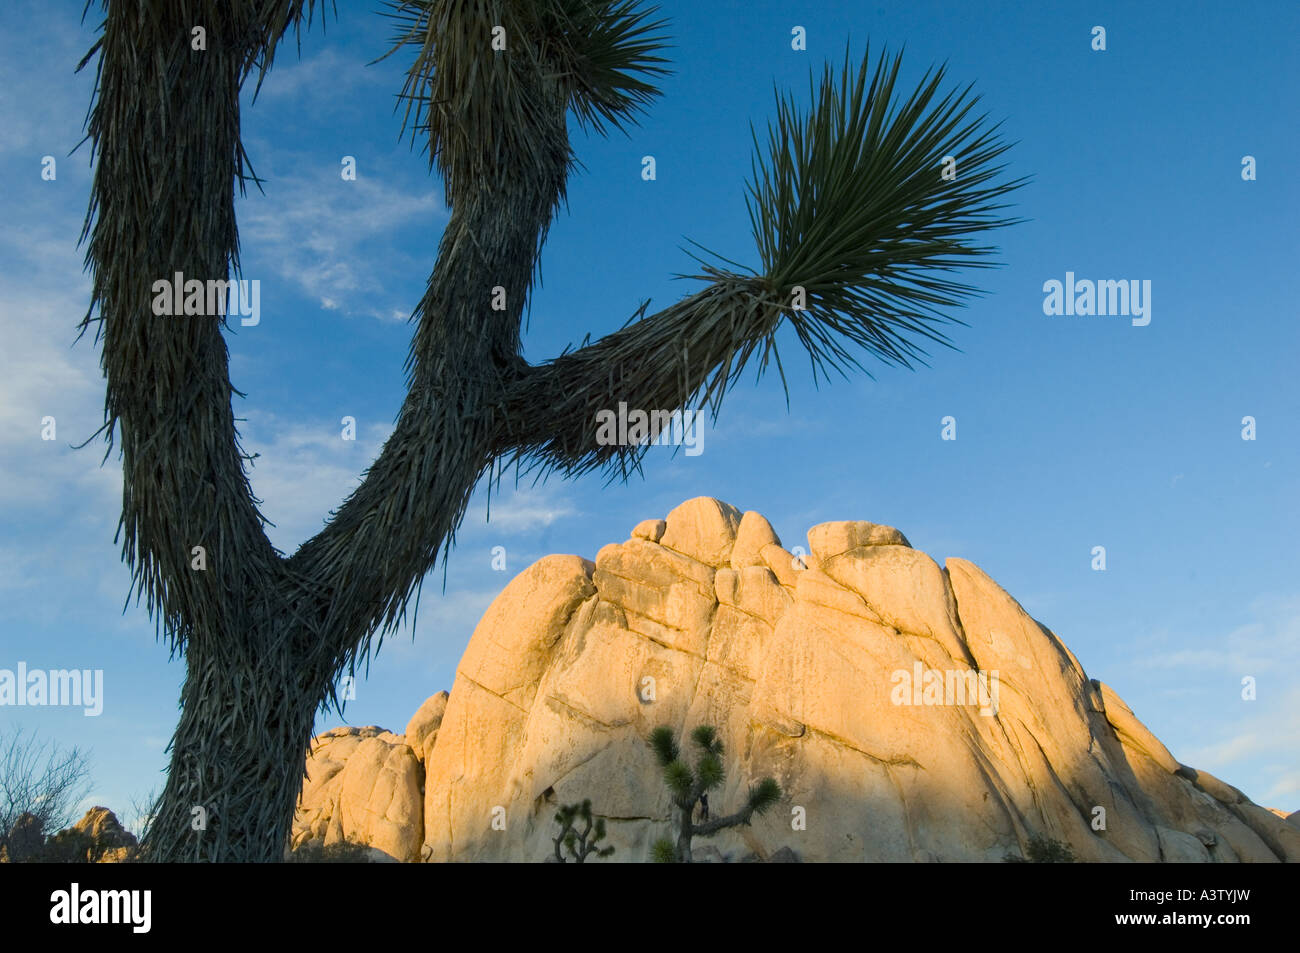 Rocas de granito y árboles yuca (Yucca brevifolia) Joshua Tree National Park, California, EE.UU. Foto de stock